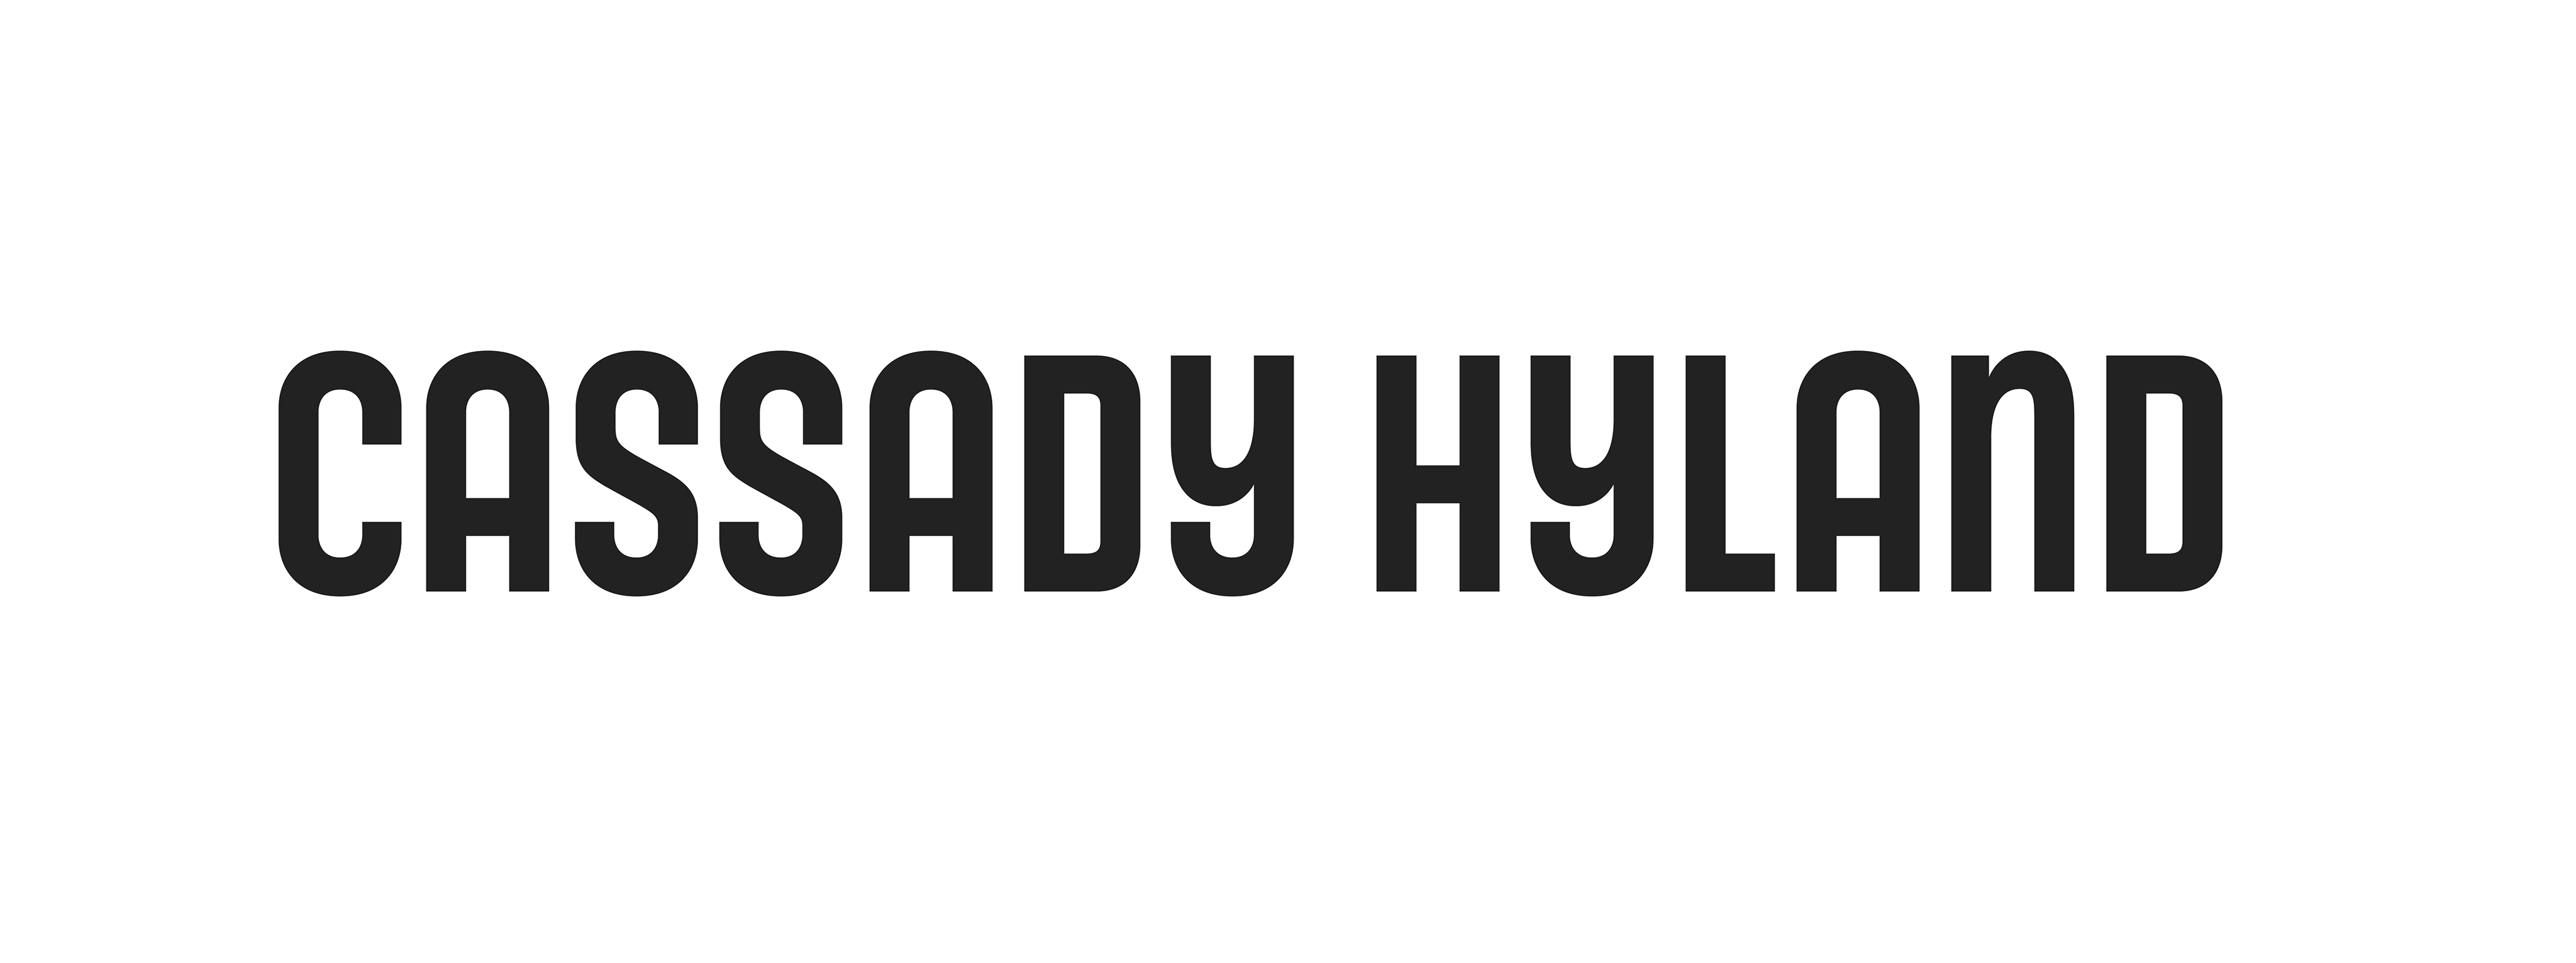 Cassady Hyland